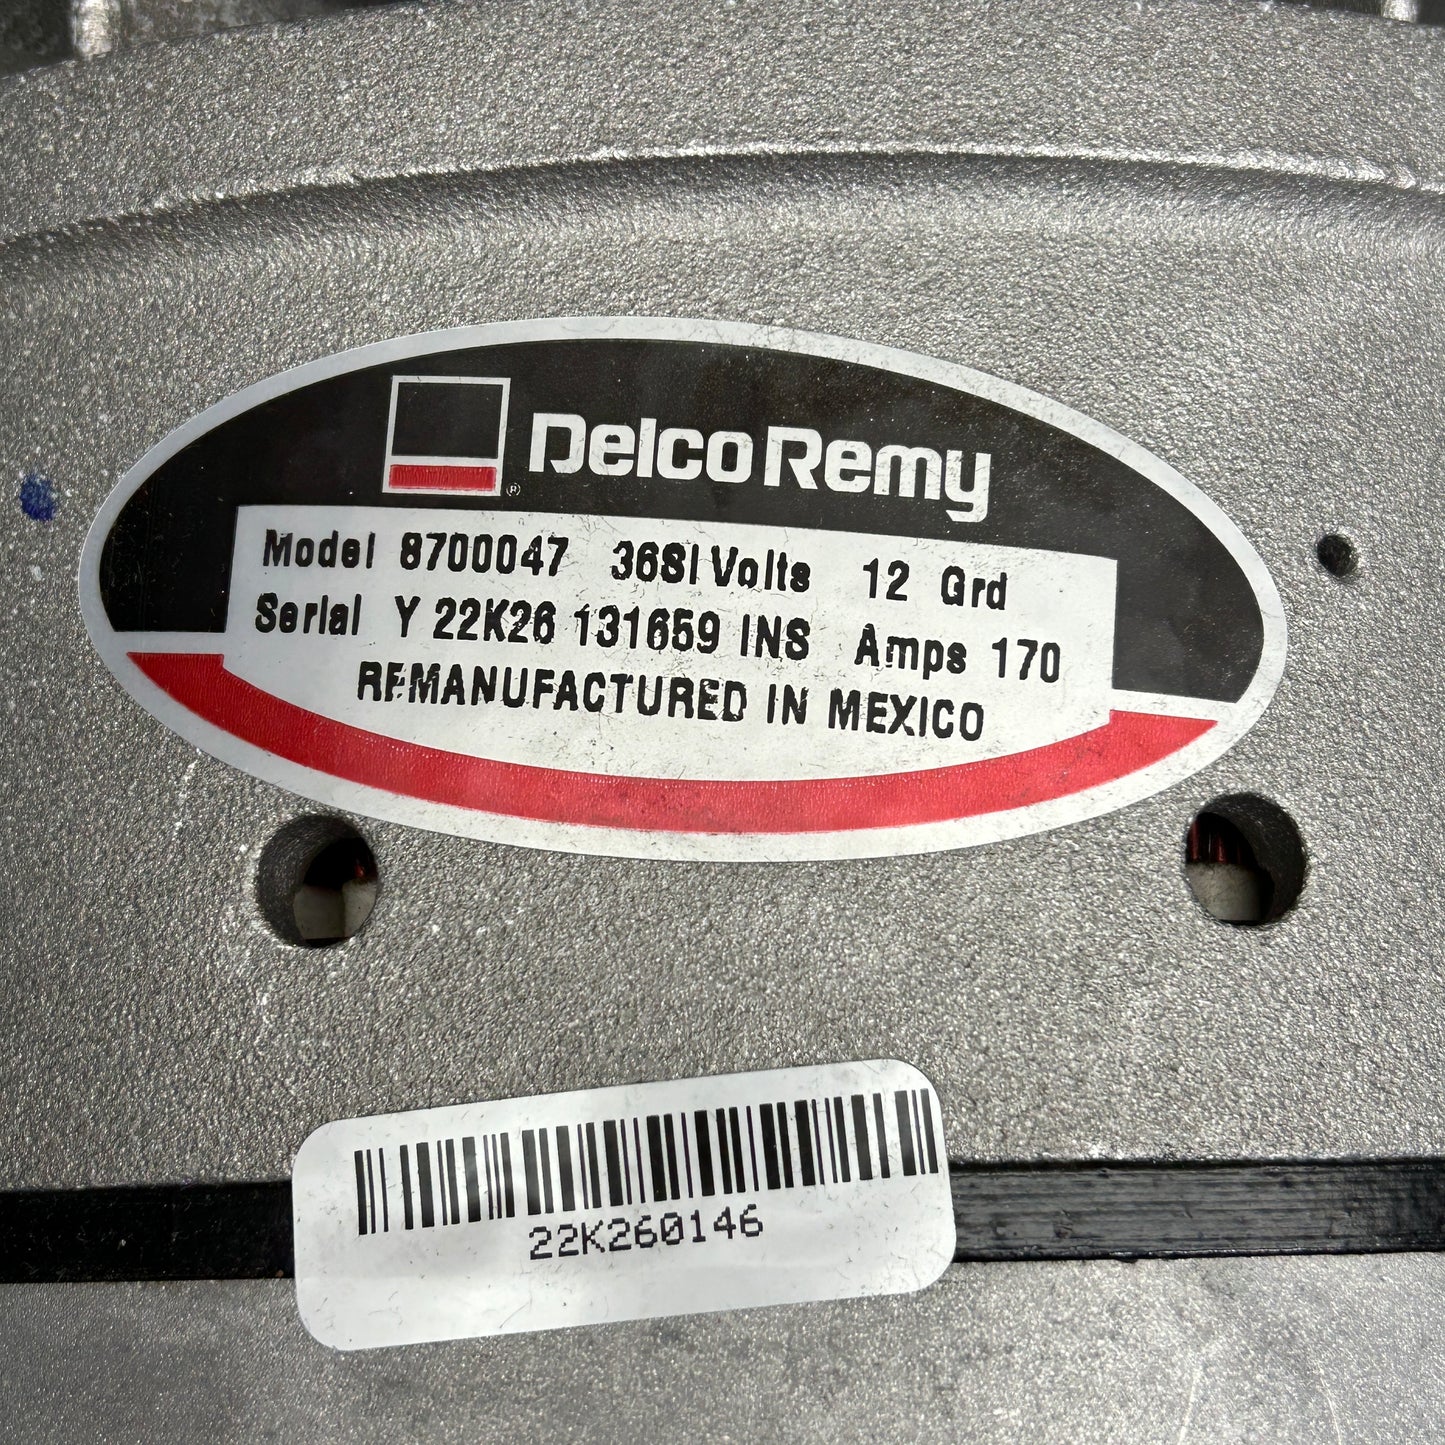 DELCO REMY Remanufactured Alternator 36SI 12V 170A 8700047 (New)